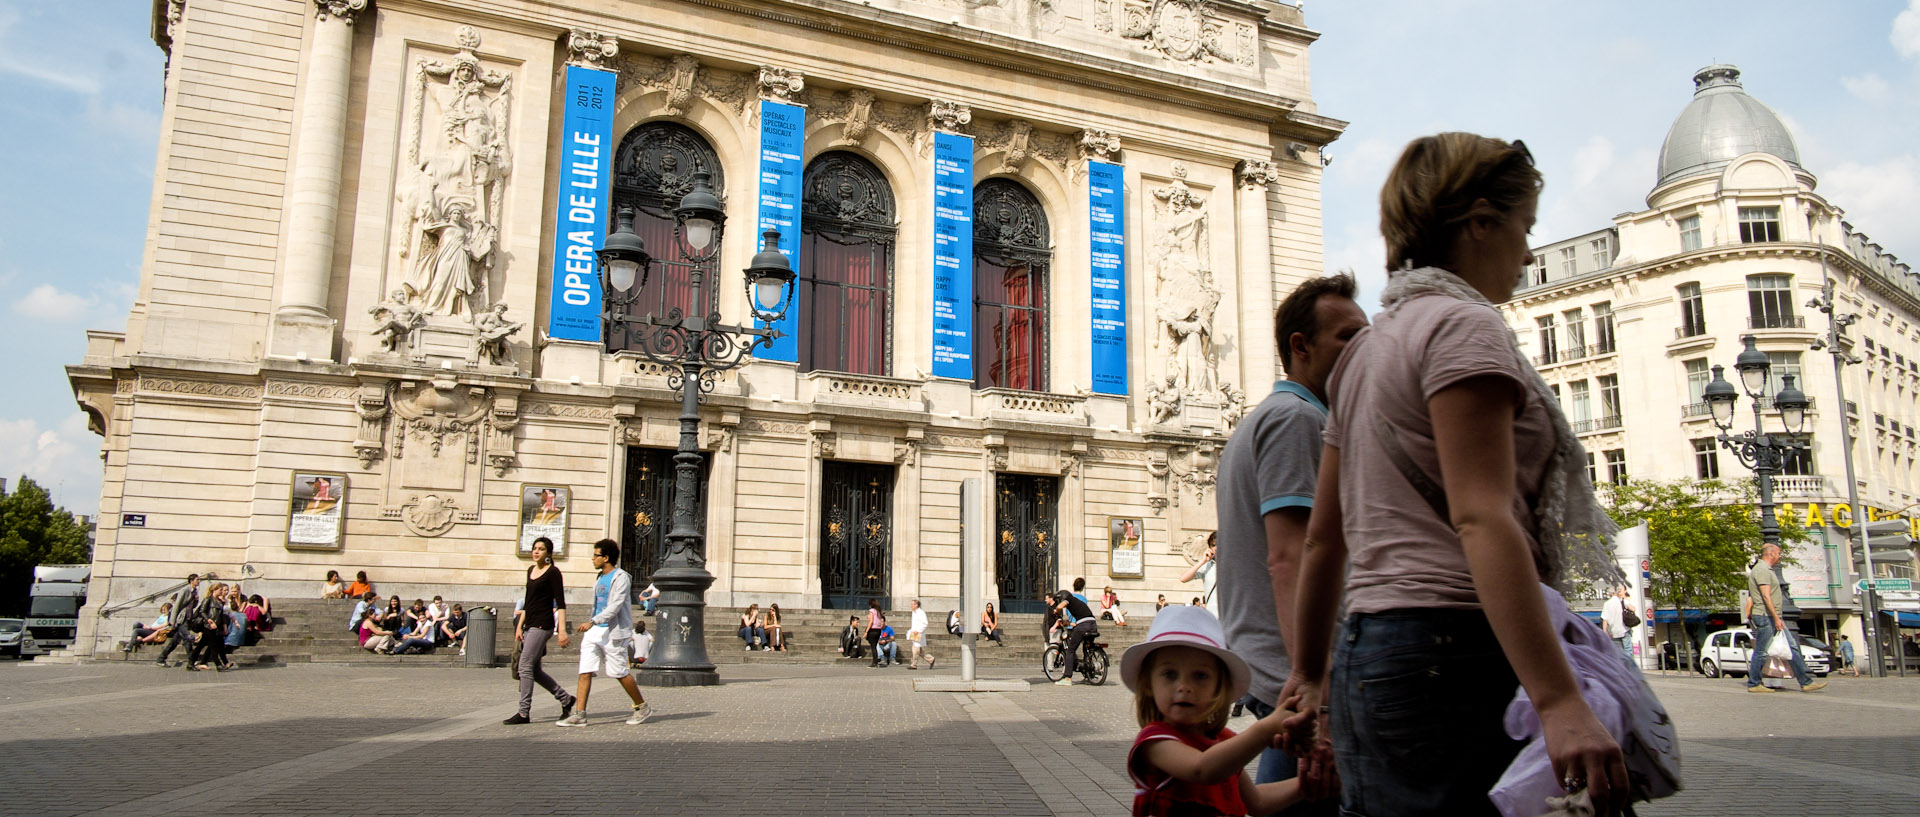 Petite fille devant l'Opéra, place du Théâtre, à Lille.